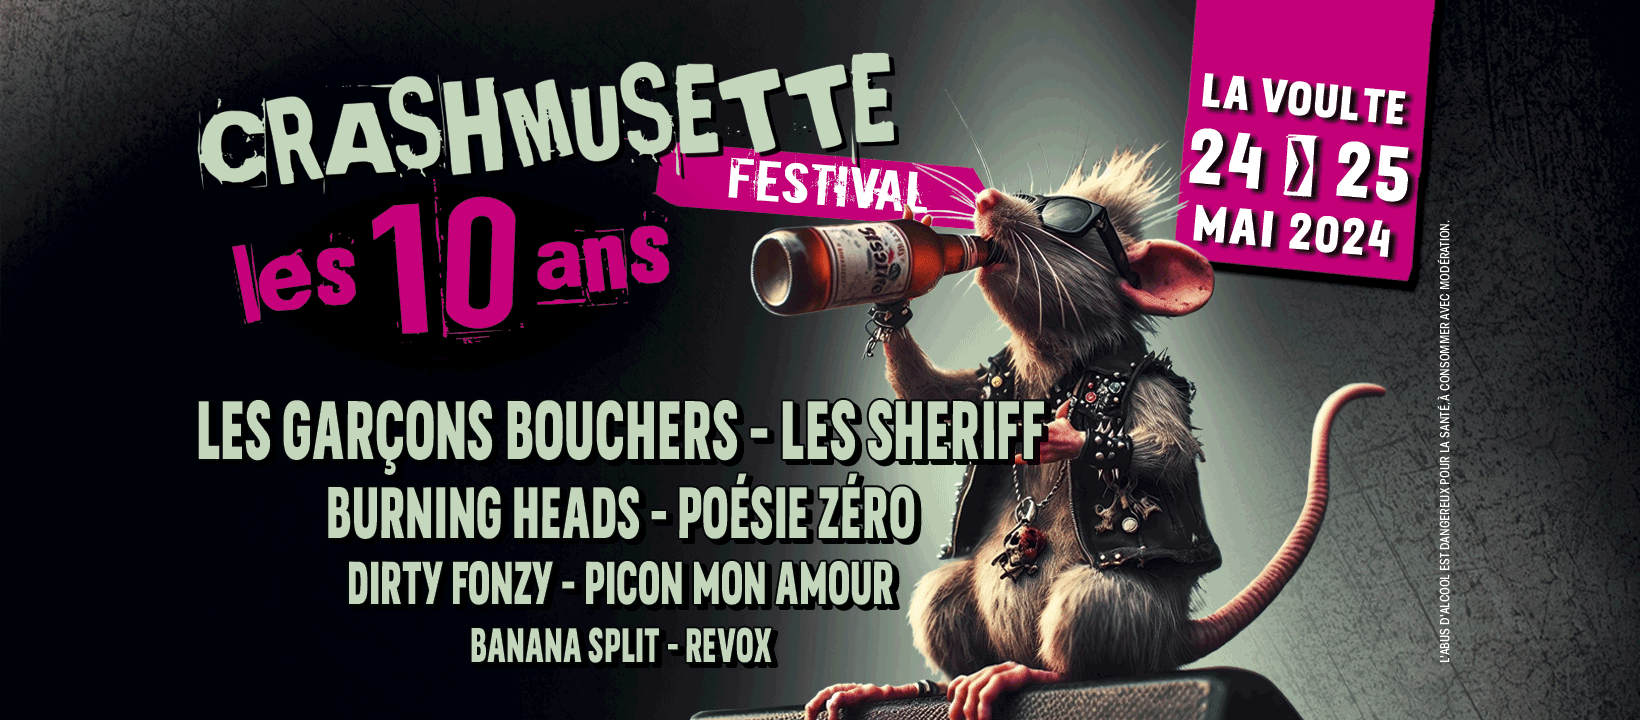 Festival de musique actuelle "Crashmusette" - Soirée-concert... Le 25 mai 2024